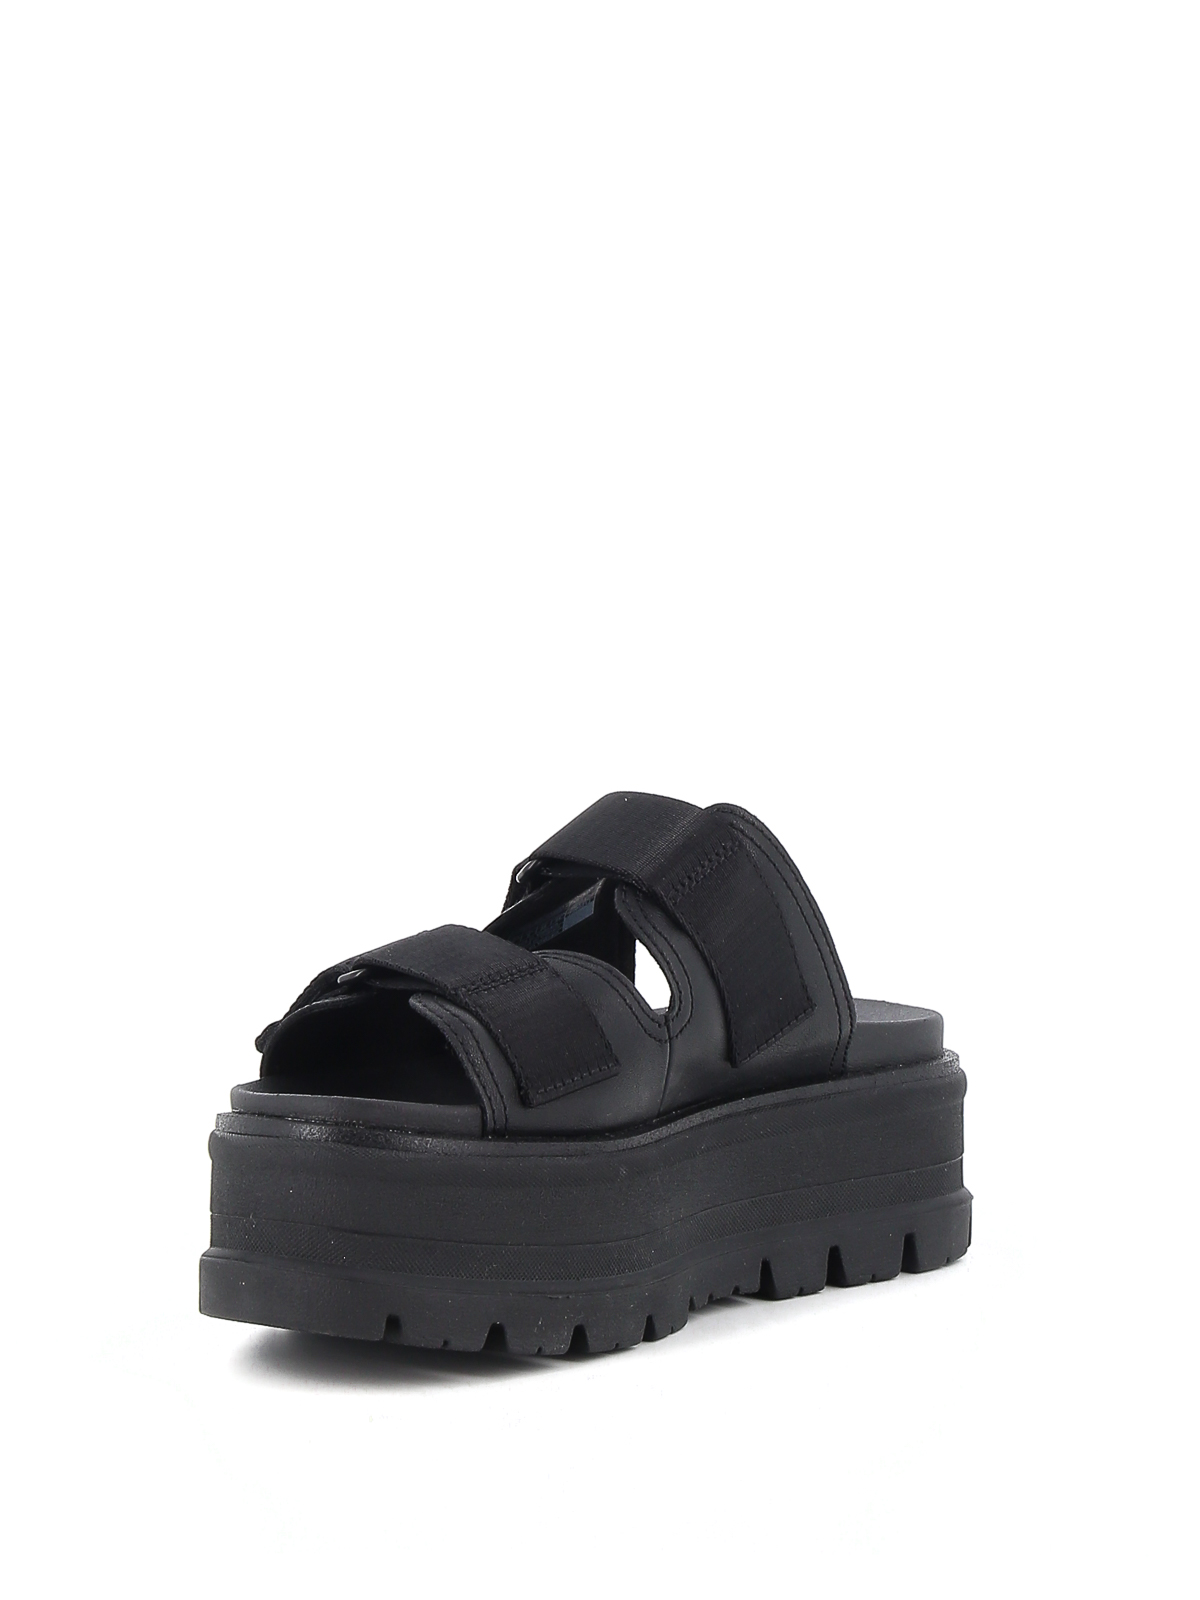 Sandals Ugg - Clem sandals - 1119951WBLACK | Shop online at iKRIX